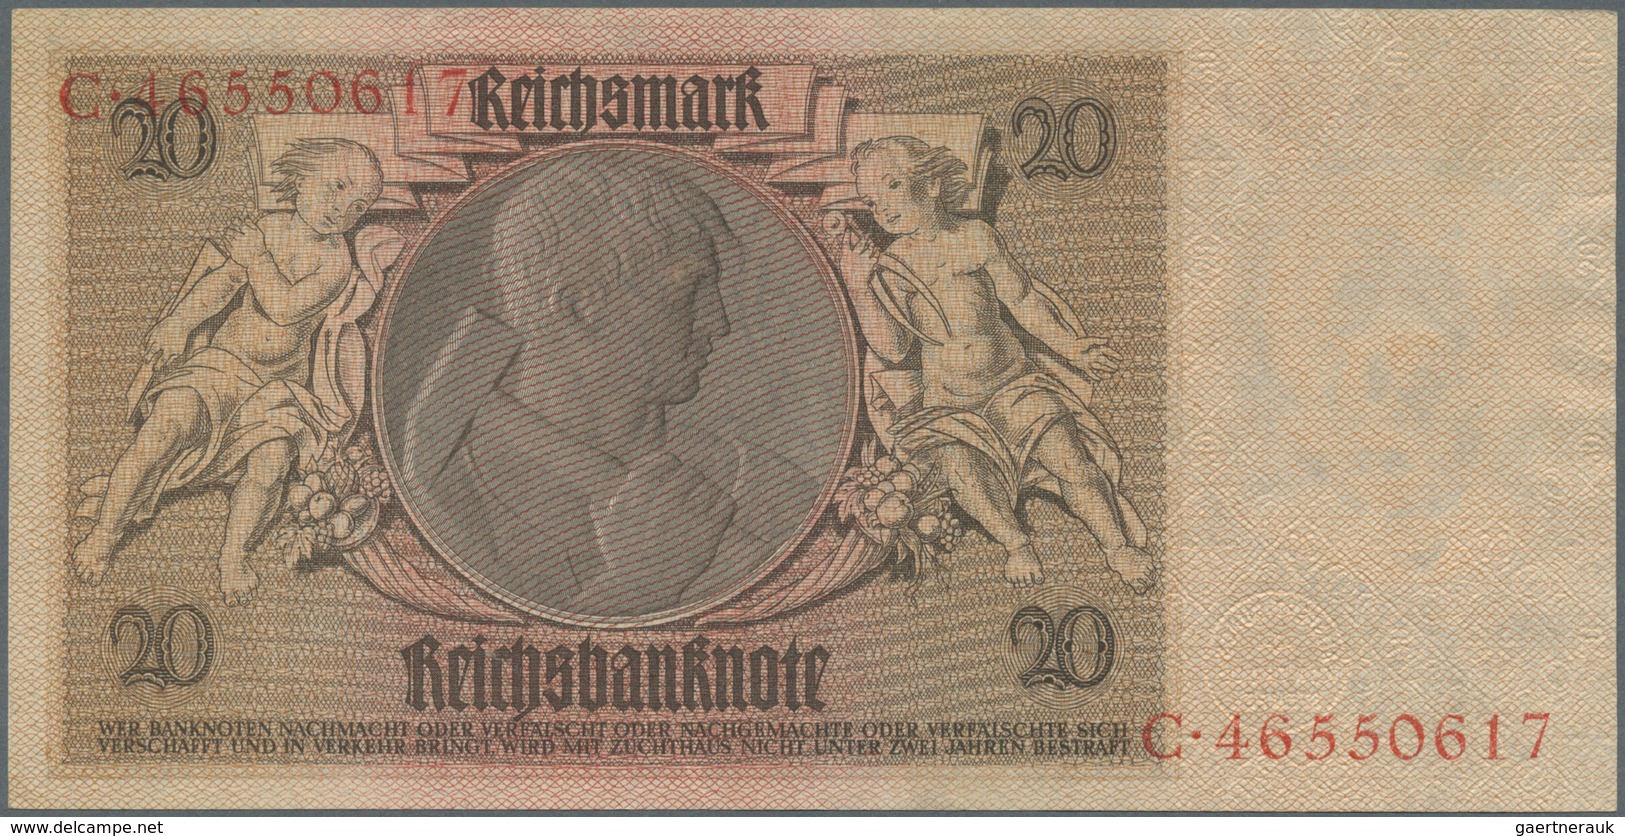 Deutschland - Deutsches Reich bis 1945: Set mit 9 Banknoten der Ausgaben 1929 bis 1936, dabei 2 x 10